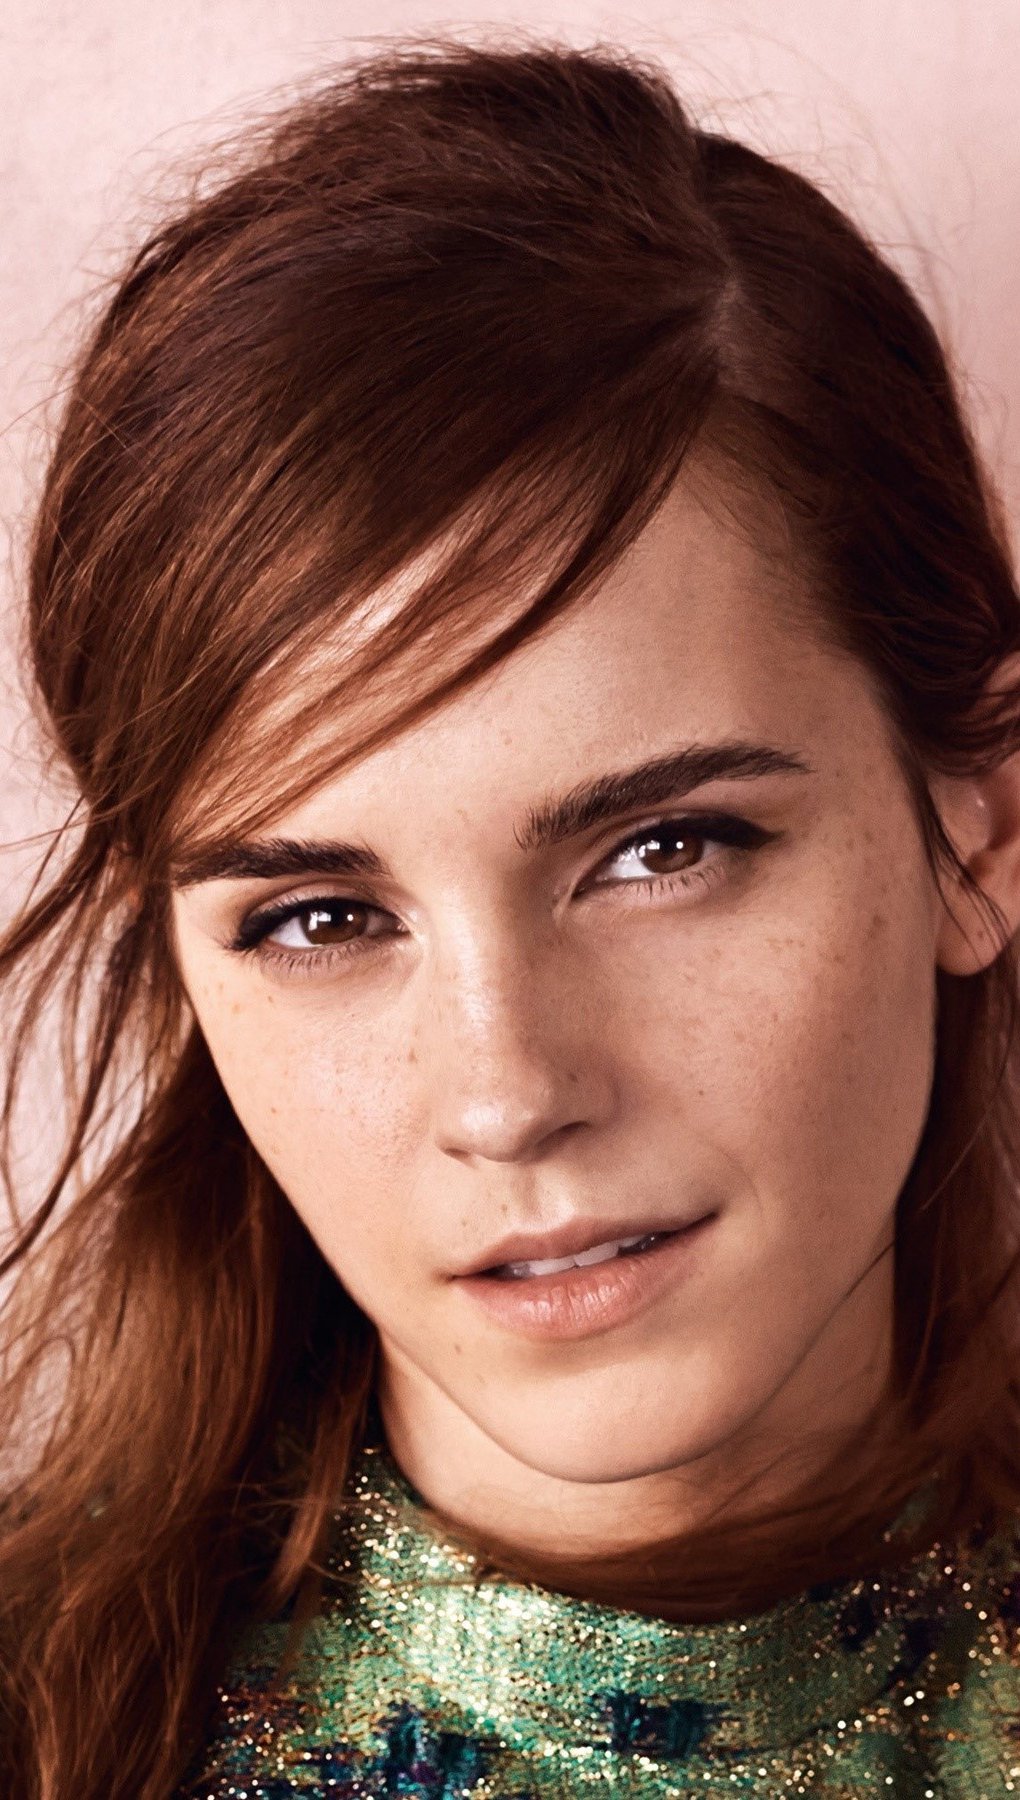 Emma Watson up close Wallpaper ID:2490